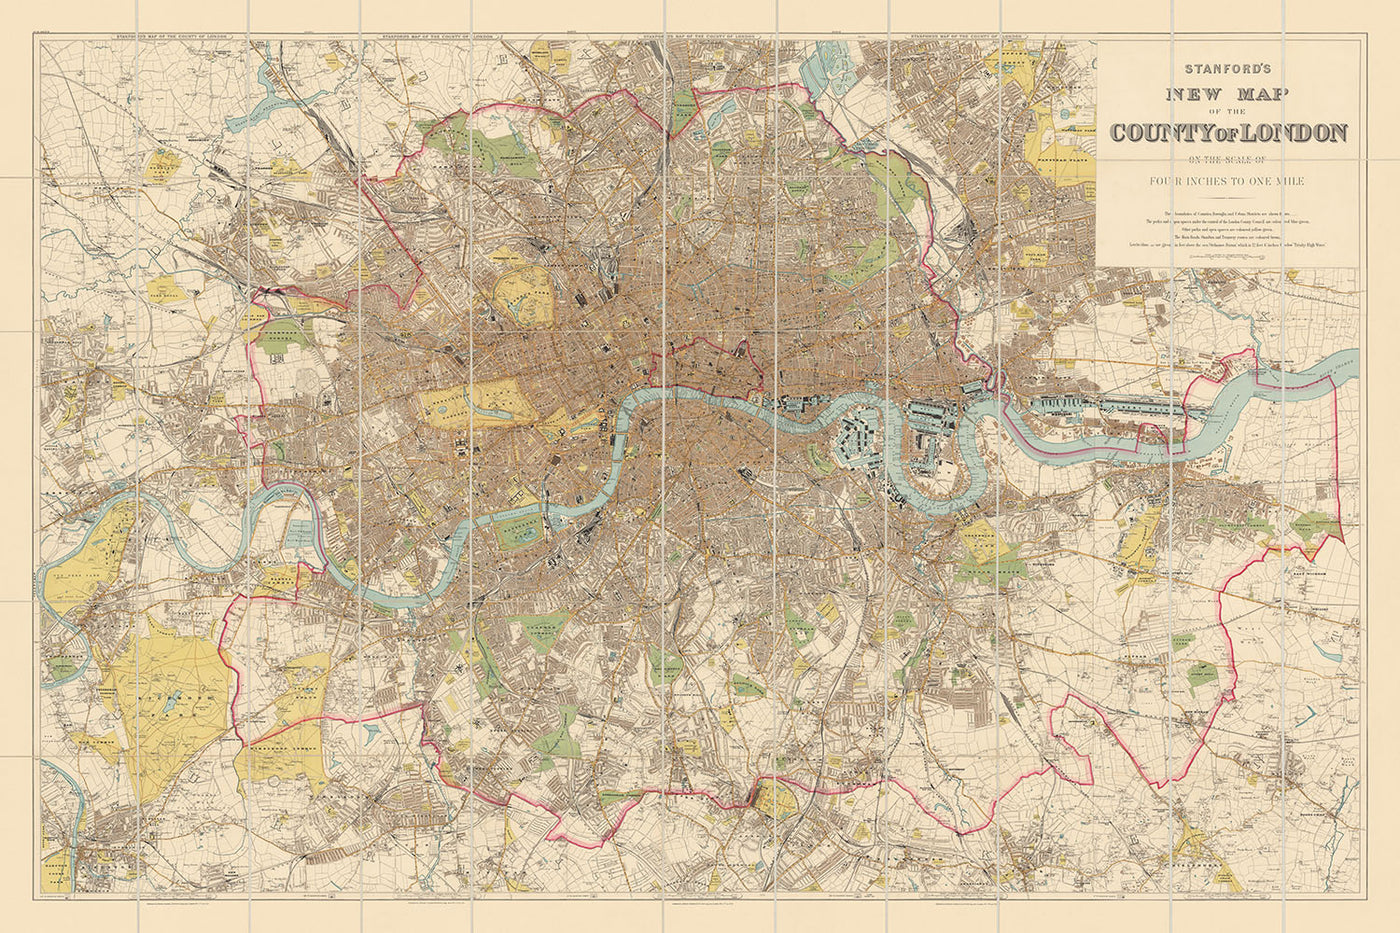 Ancienne carte de Londres par Stanford, 1905 : Buckingham Palace, St. Paul's, Thames, Houses of Parliament, Hyde Park